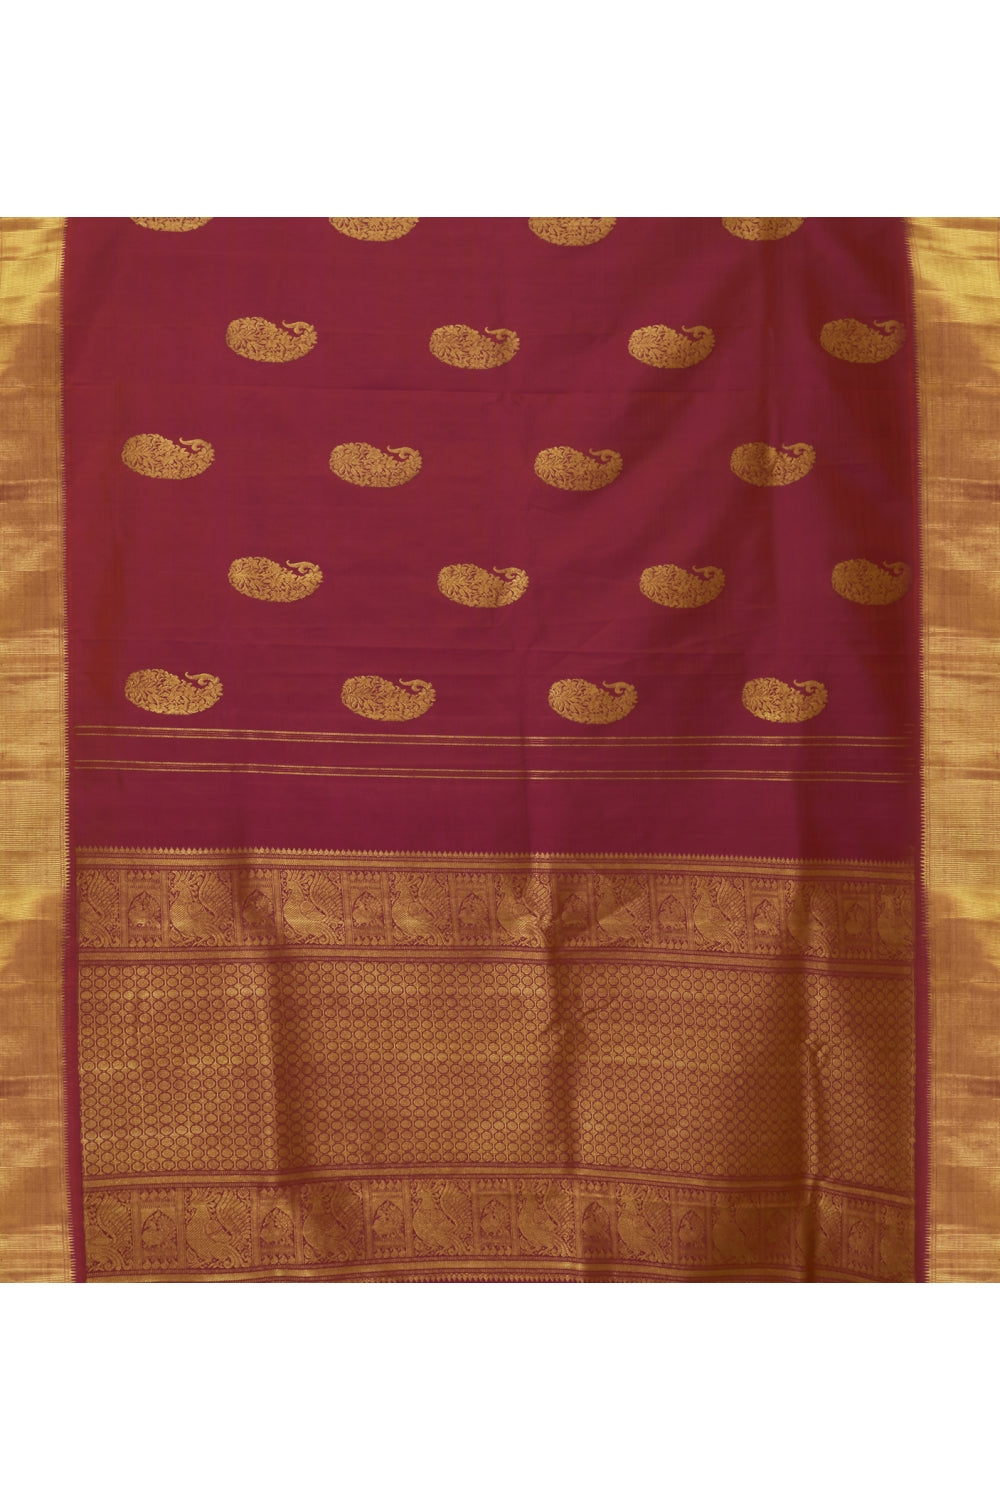 Large Bordered Real Jari Deep Fuchsia Silk Kanjeevaram Saree Devam